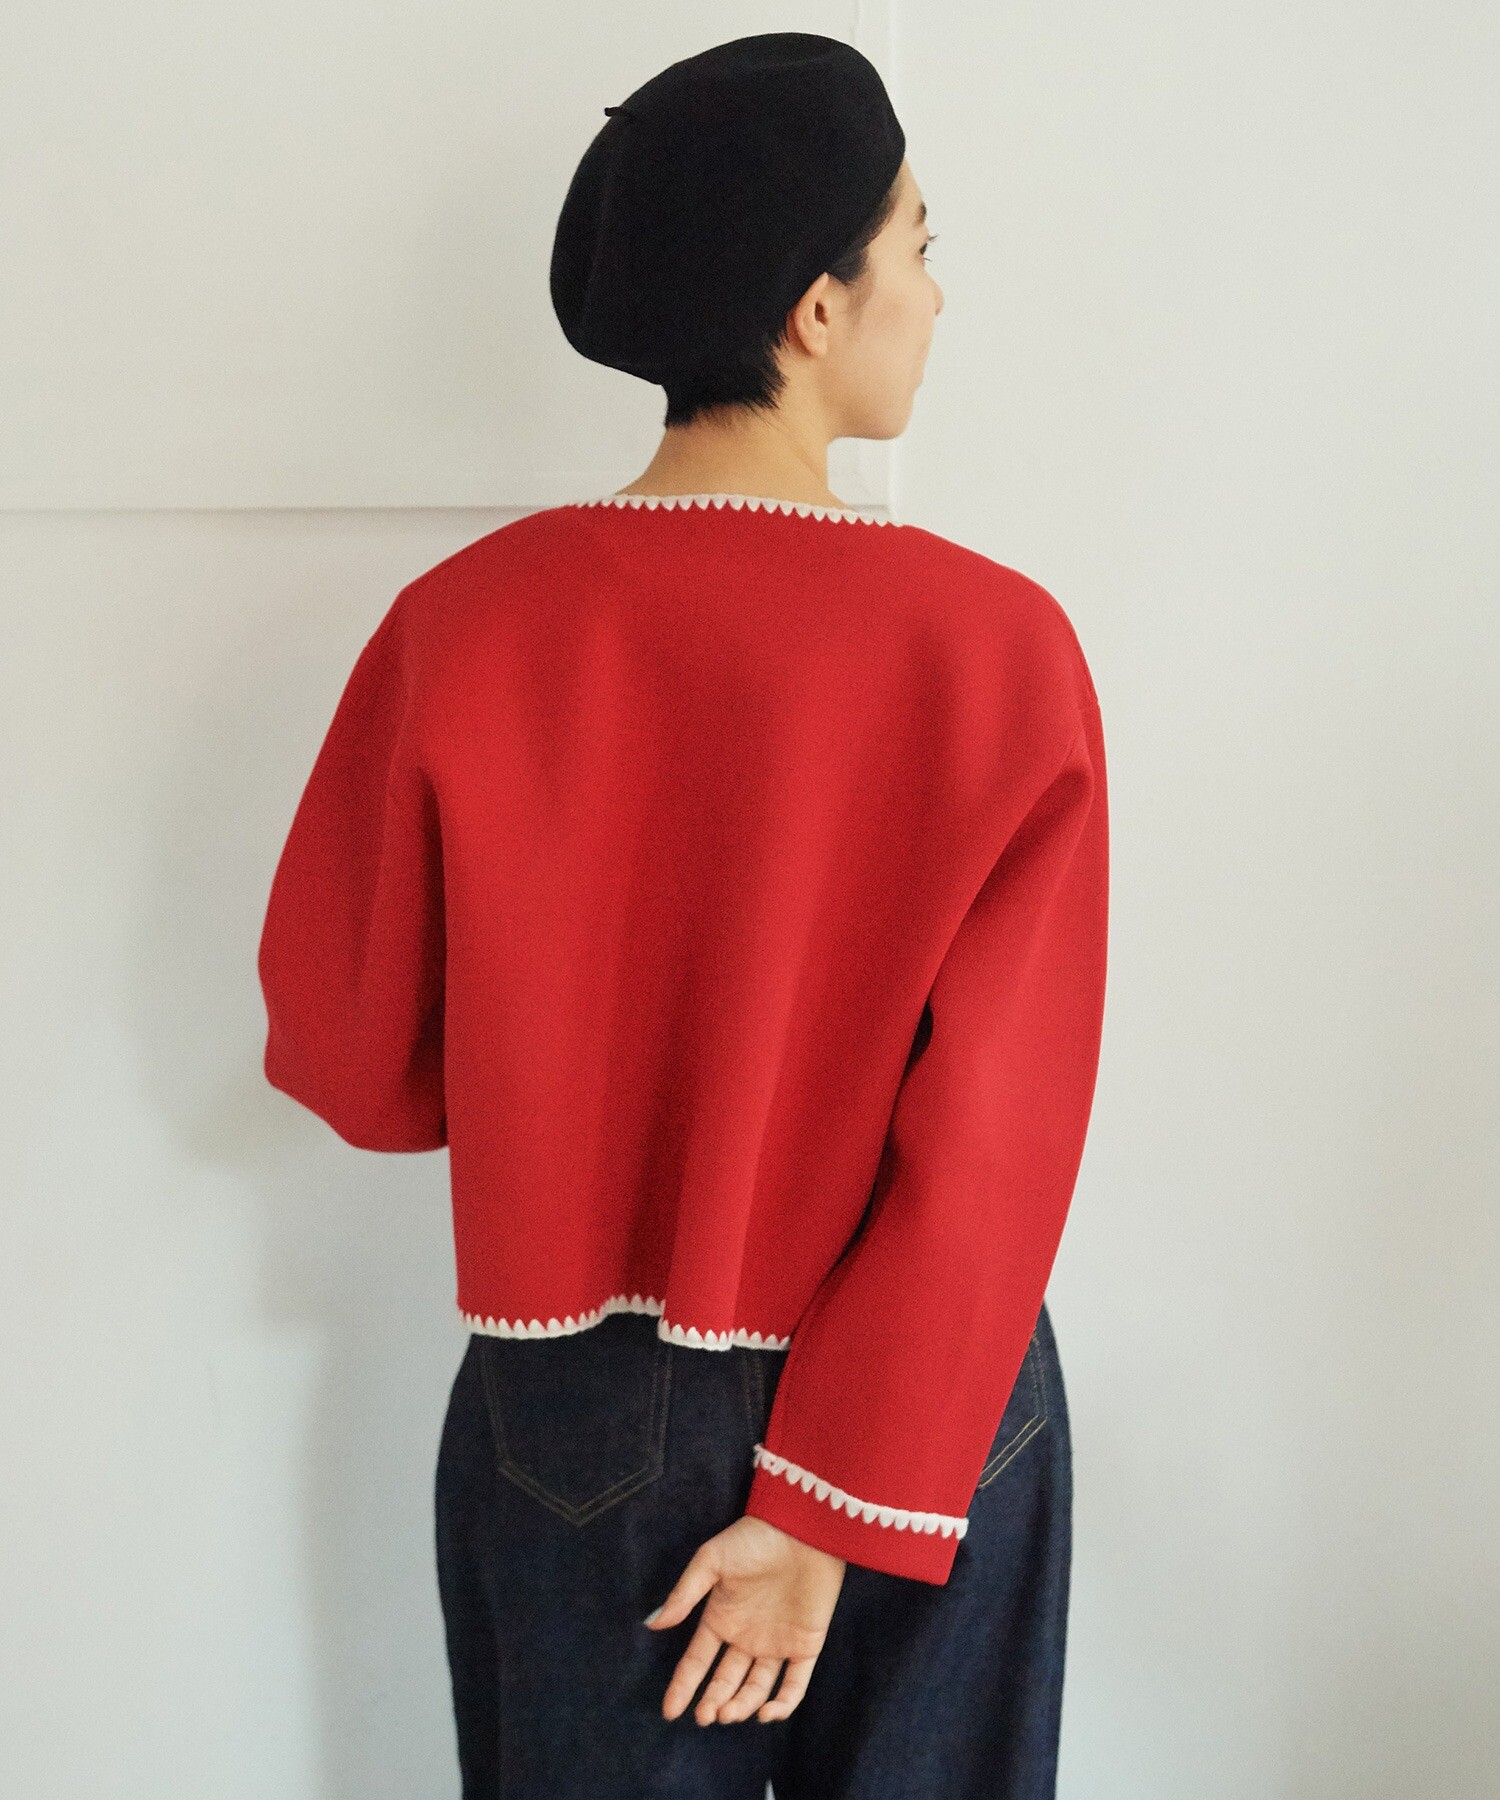 希少品 Lily Poem 赤色 カーディガン 立体 鍵編み 刺繍袖丈約53cm 